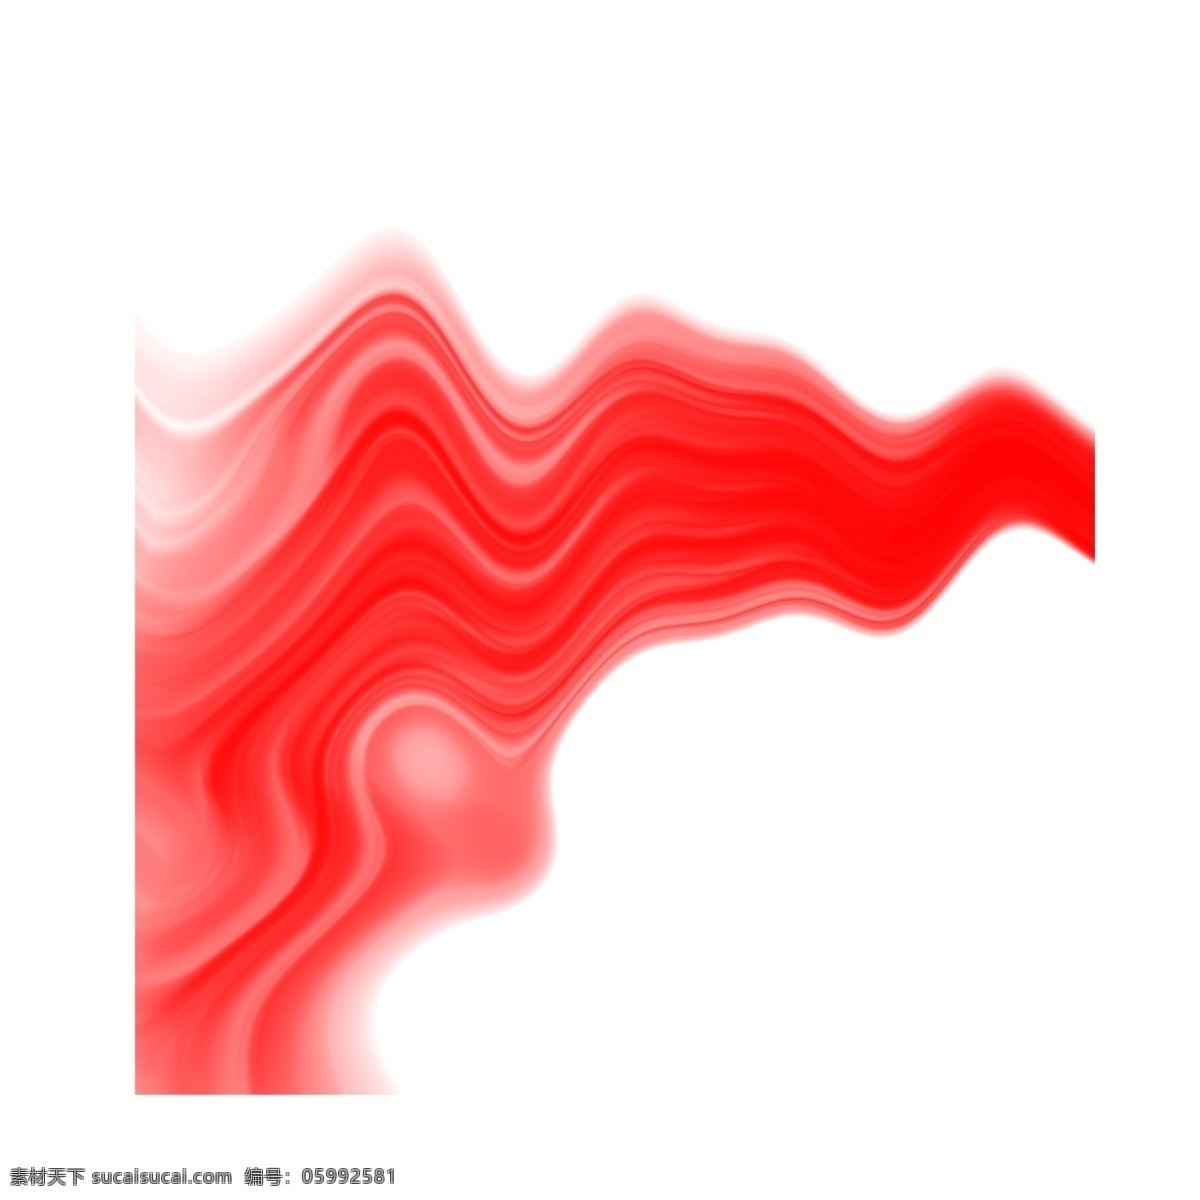 红色 线条 创意 底纹 抽象 复杂 层次 简约 凌乱 科技 背景 动感 空间感 装饰 个性 图形 曲线